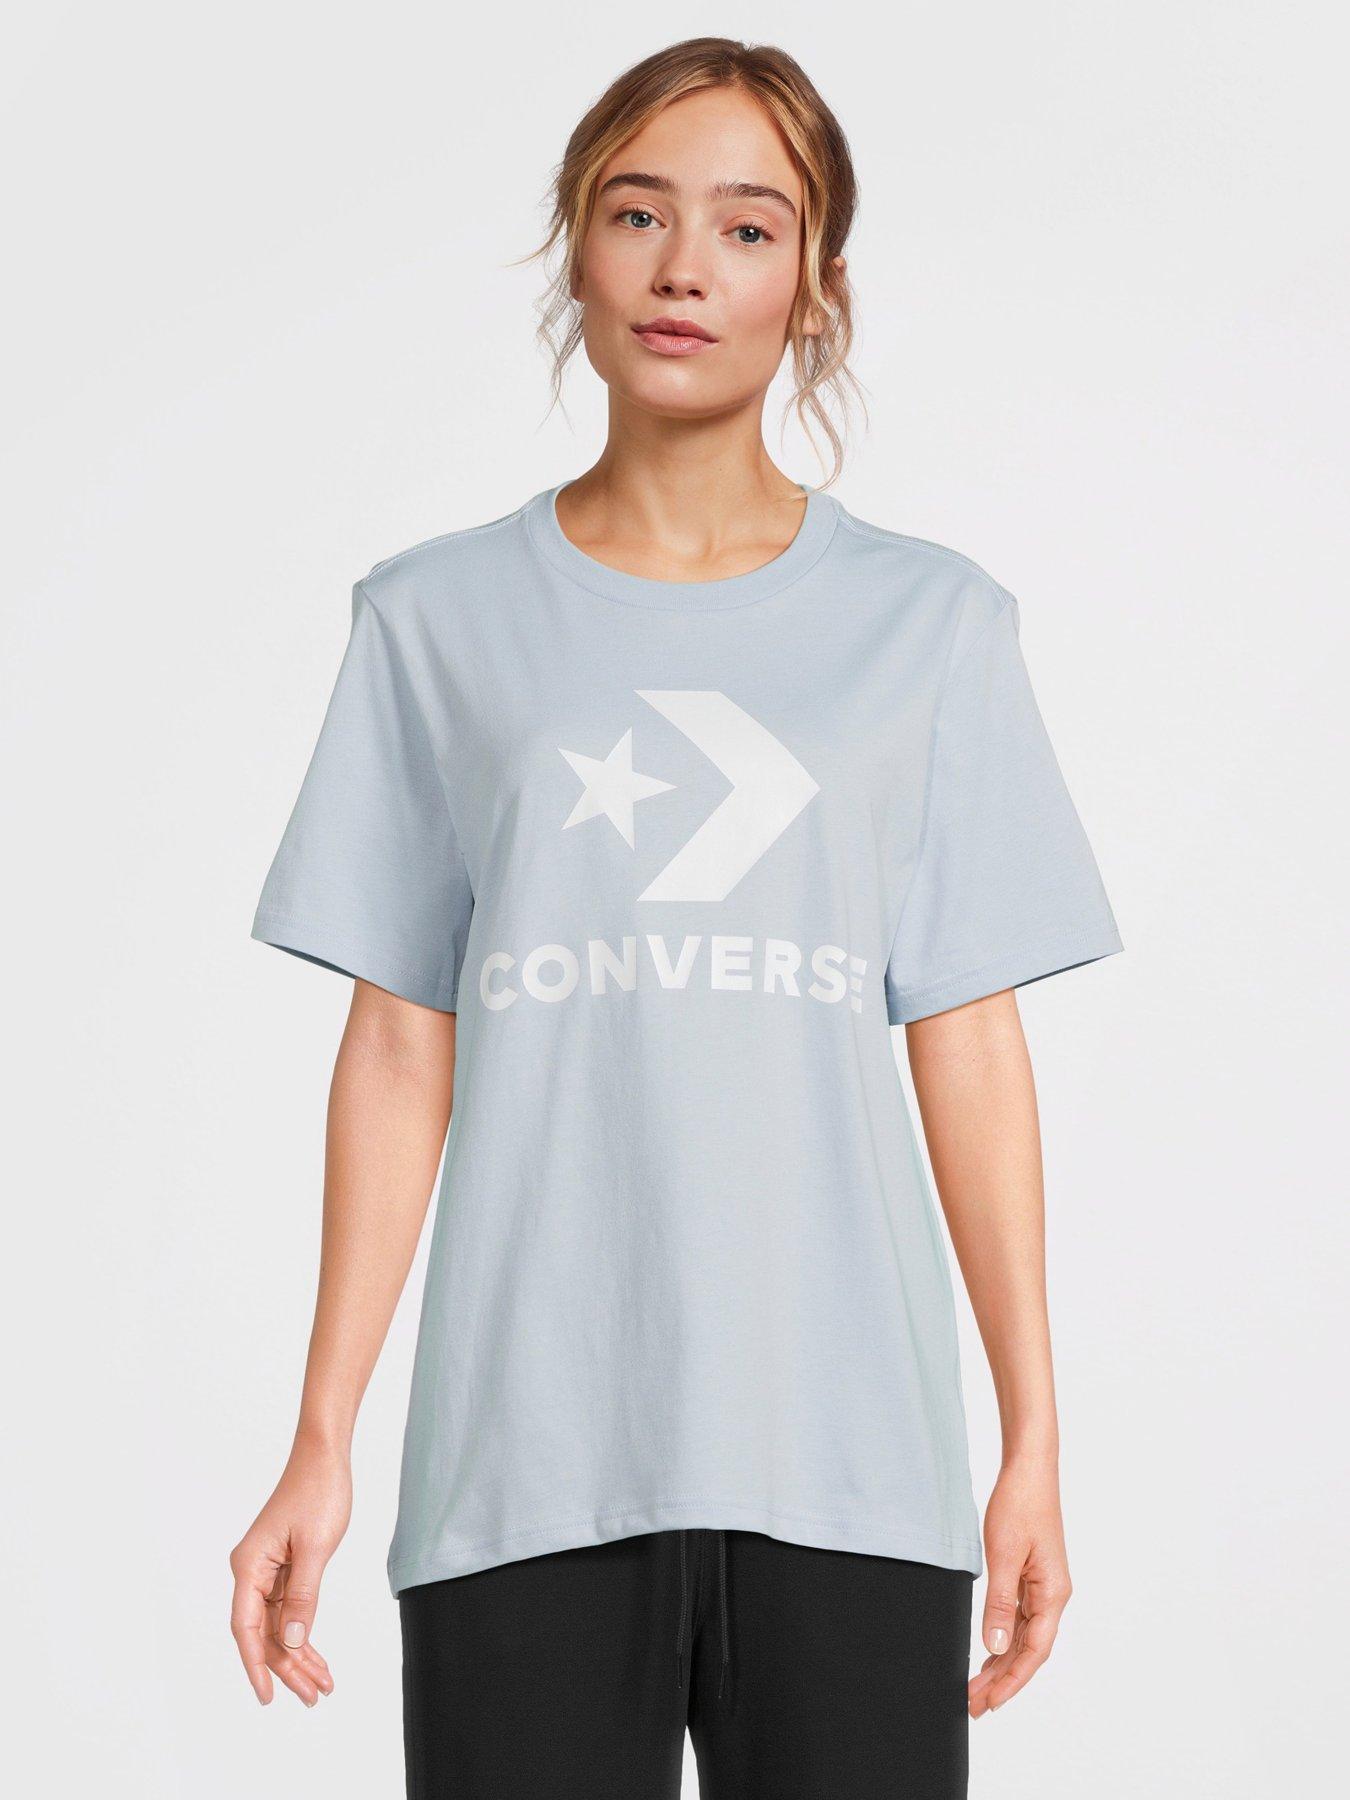 Converse Gender Free Star Chevron Logo T-shirt - Light Blue, Light Blue, Size M, Women